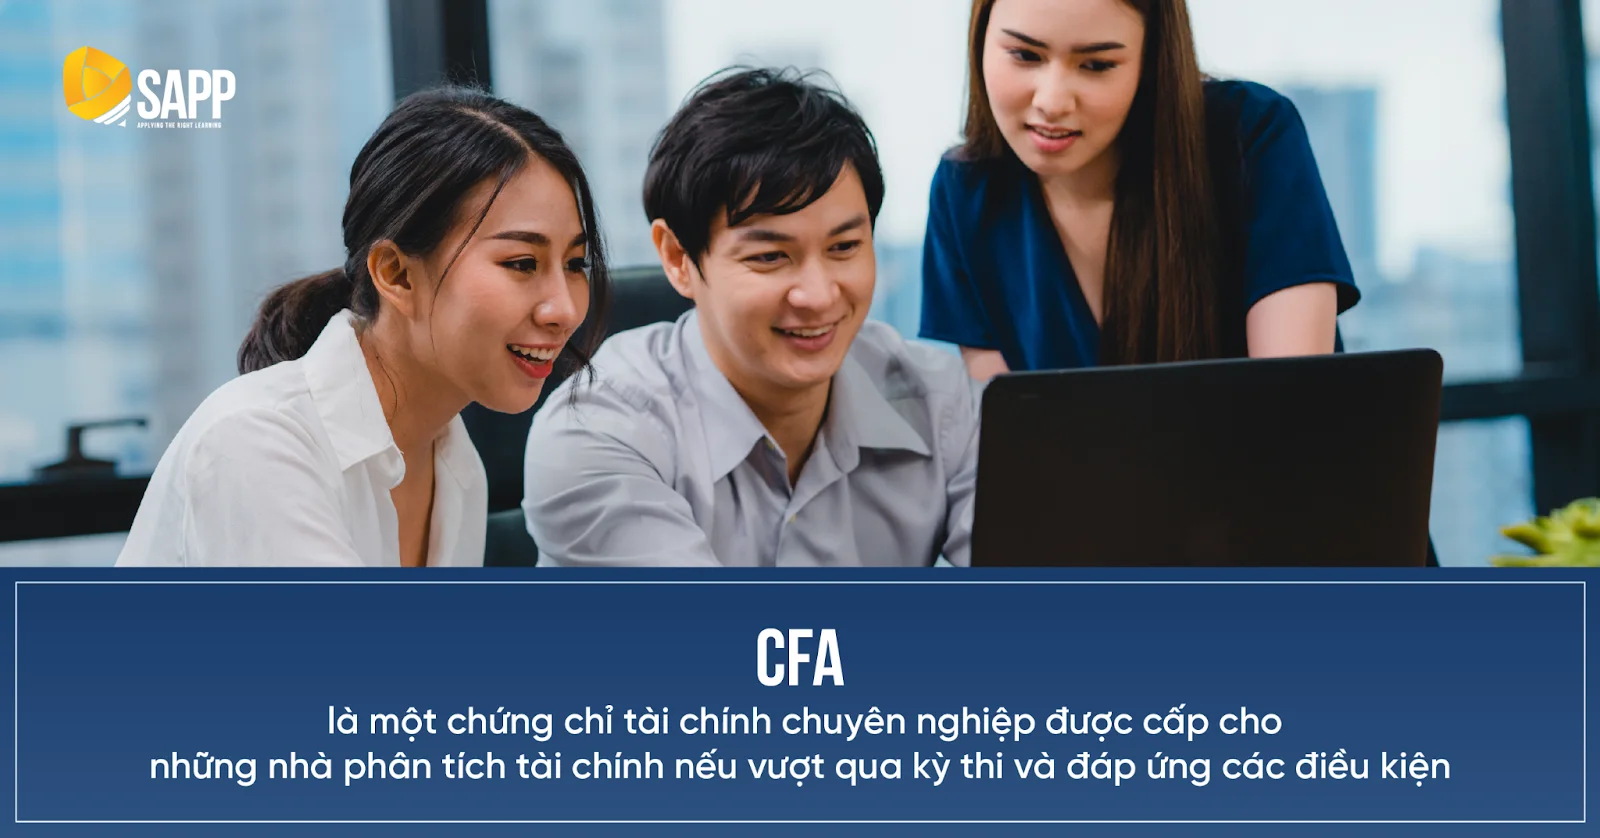 CFA là chứng chỉ tài chính chuyên nghiệp được cấp cho những nhà phân tích tài chính